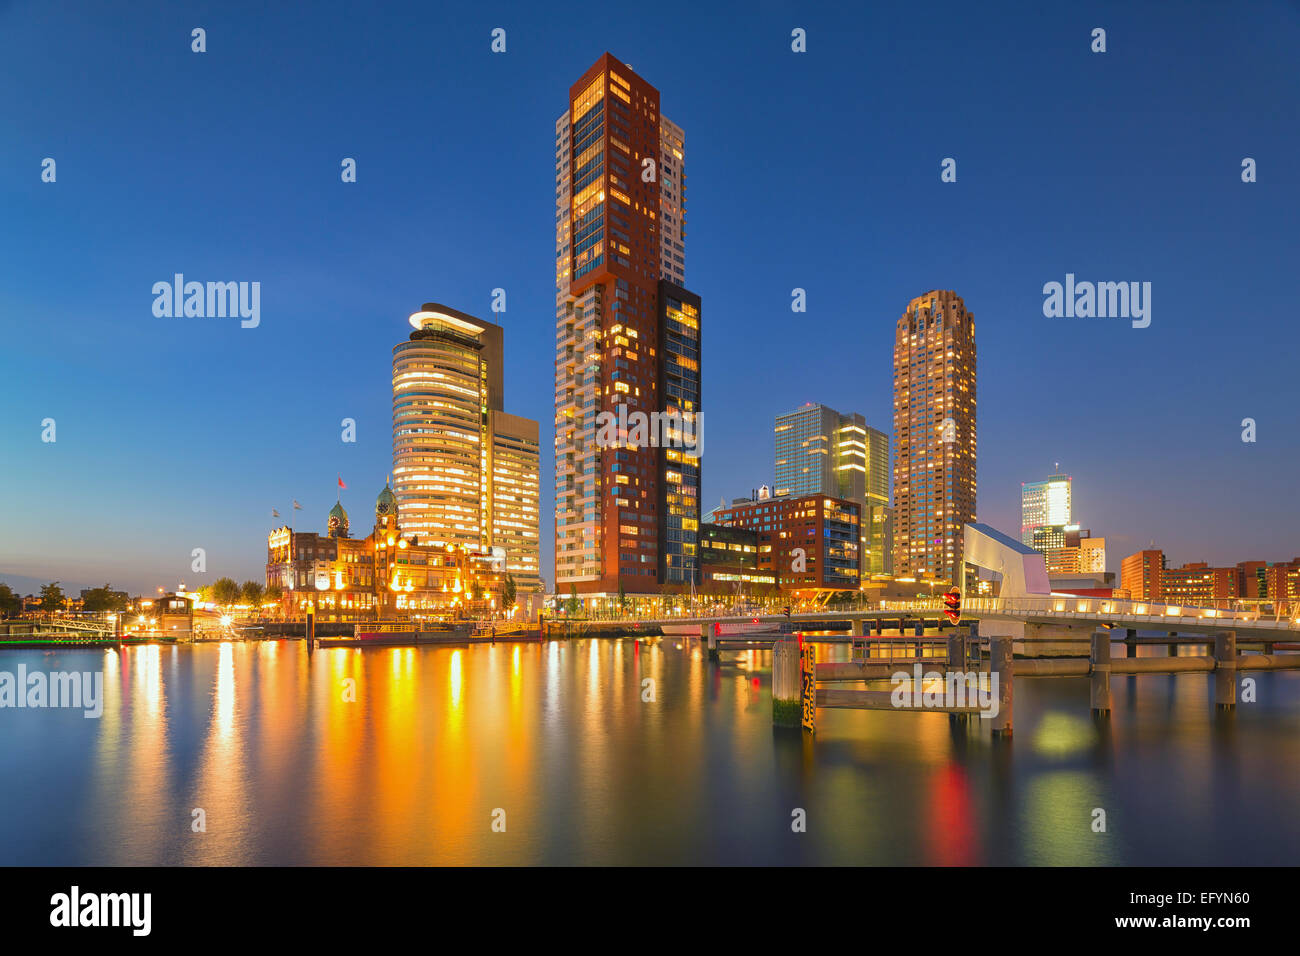 Eine dramatische Citycape von Wolkenkratzern in Rotterdam, Niederlande Stockfoto